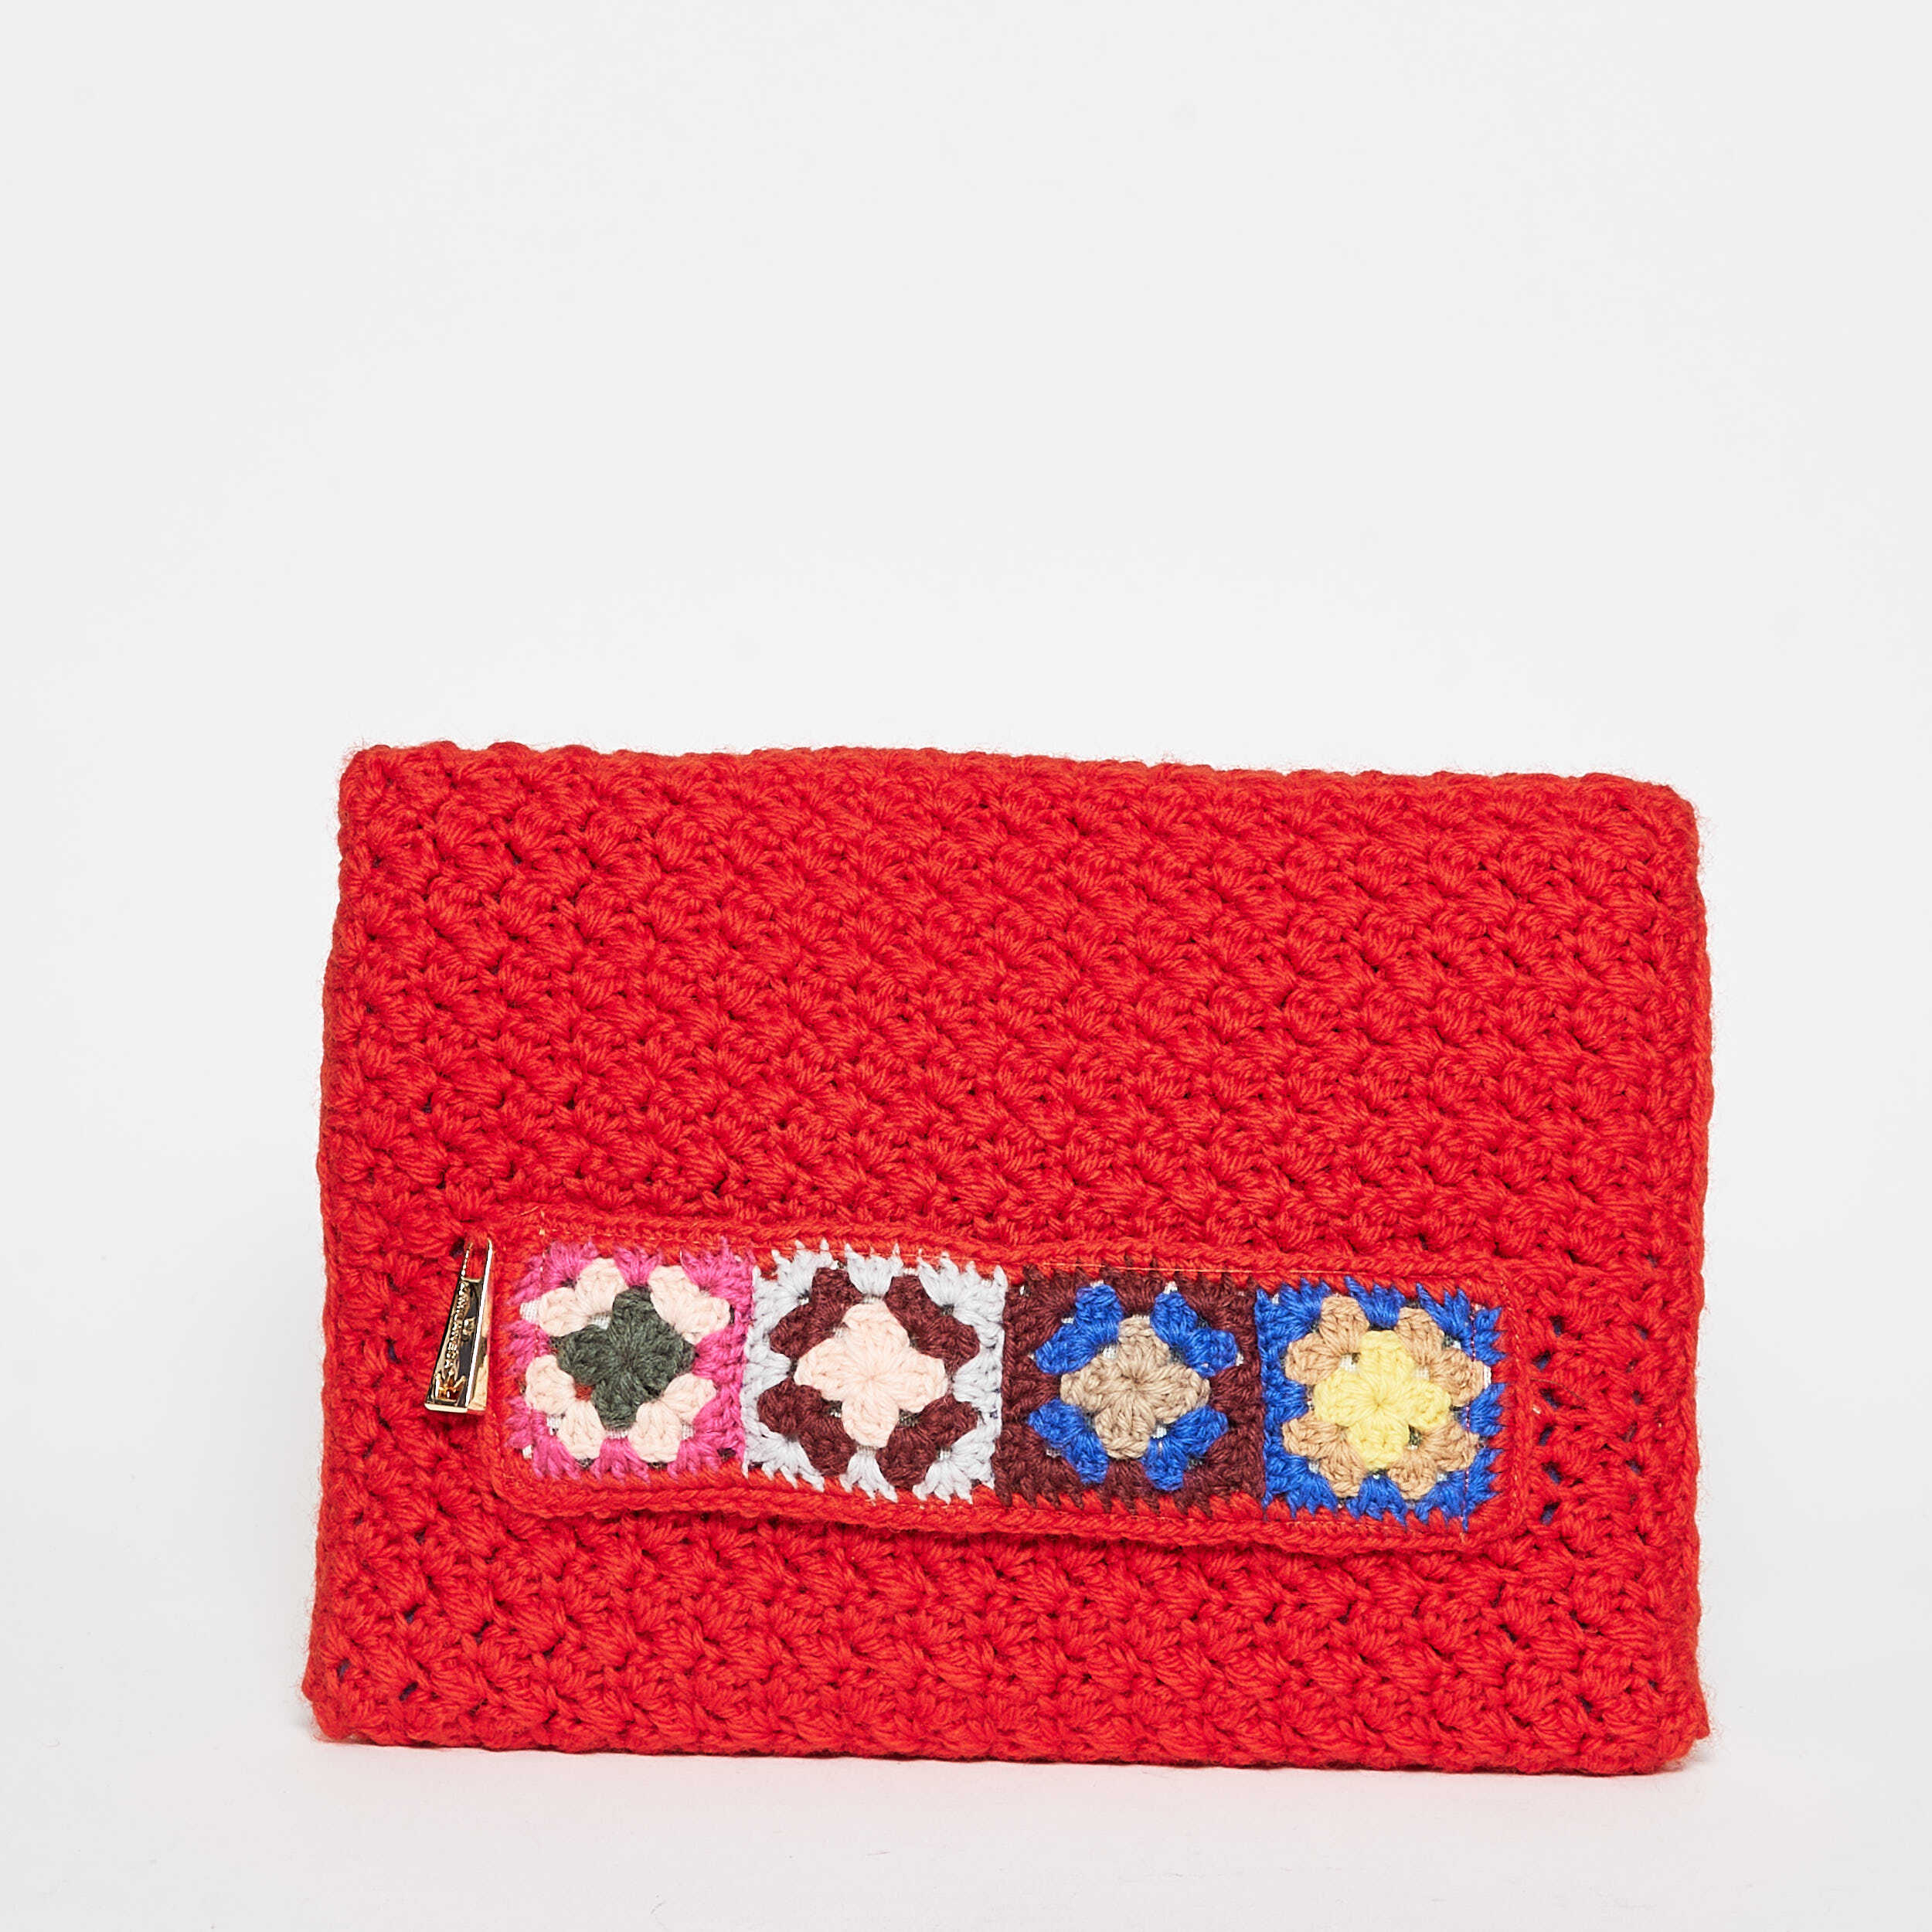 LA MILANESA Clutch In Lana Crochet Rossa Red